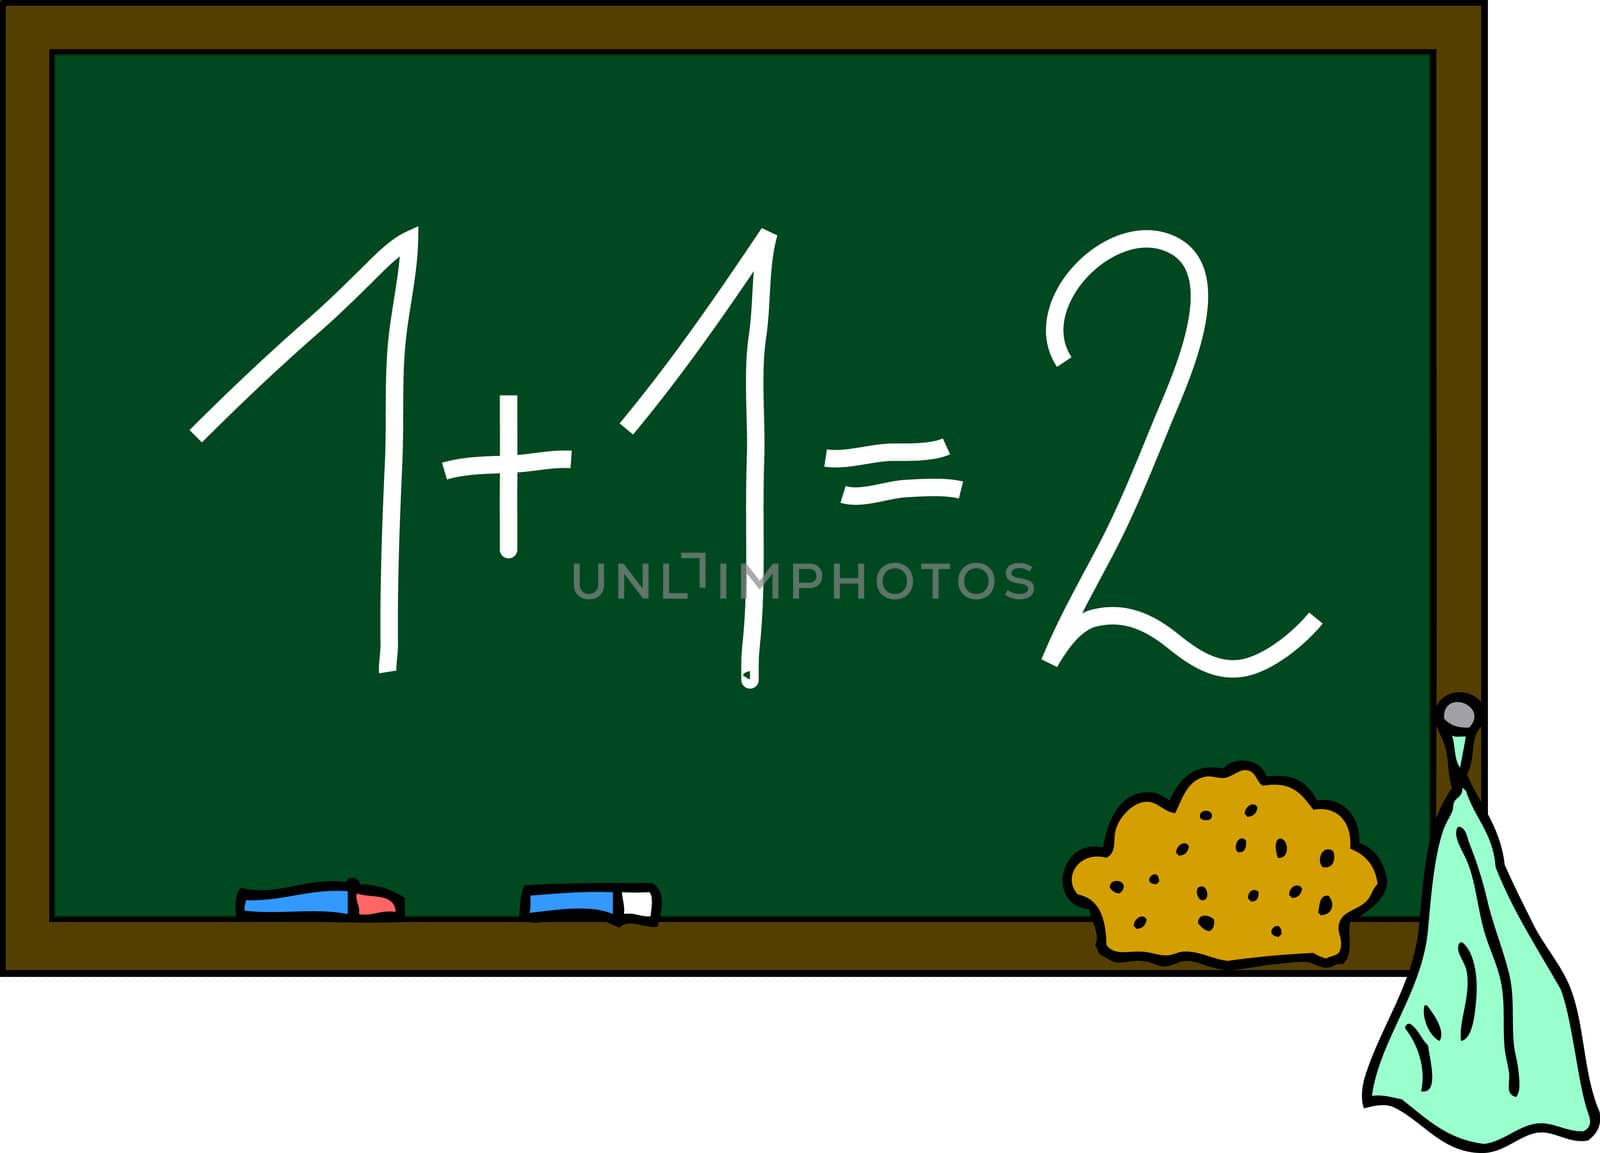 blackboard 1+1=2 by peromarketing